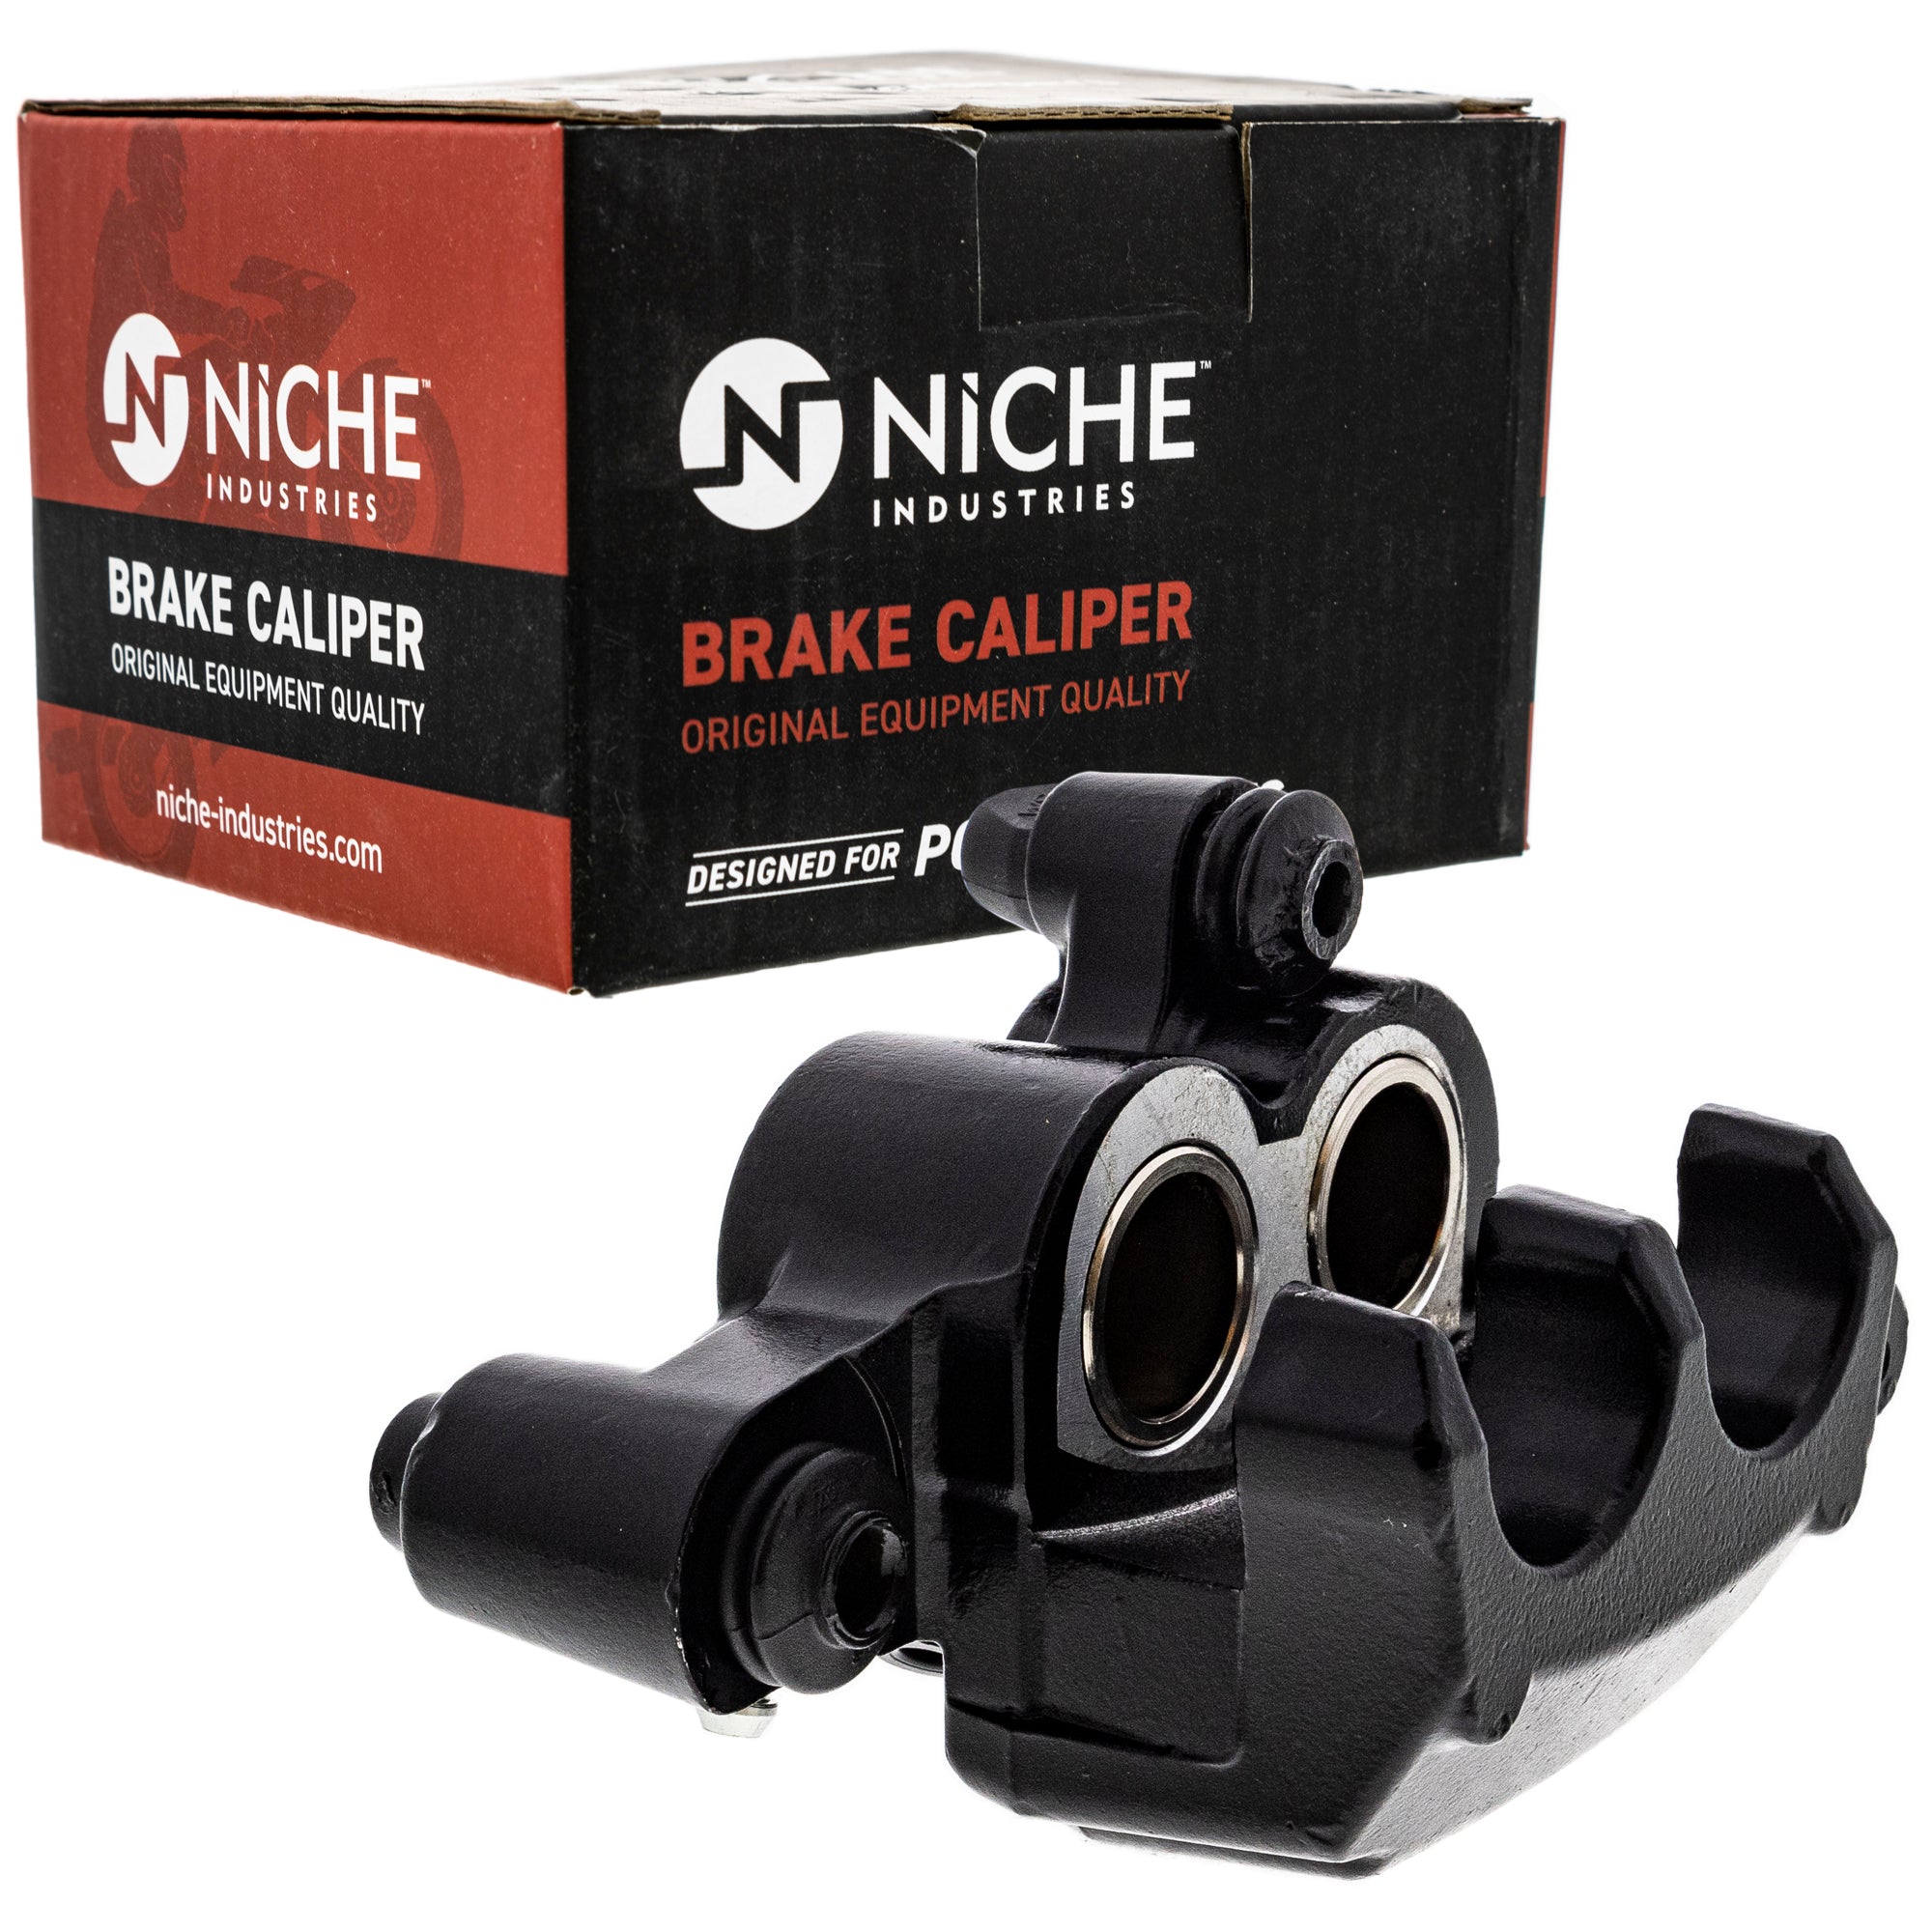 NICHE Brake Caliper Kit 705601014 705600860 705600859